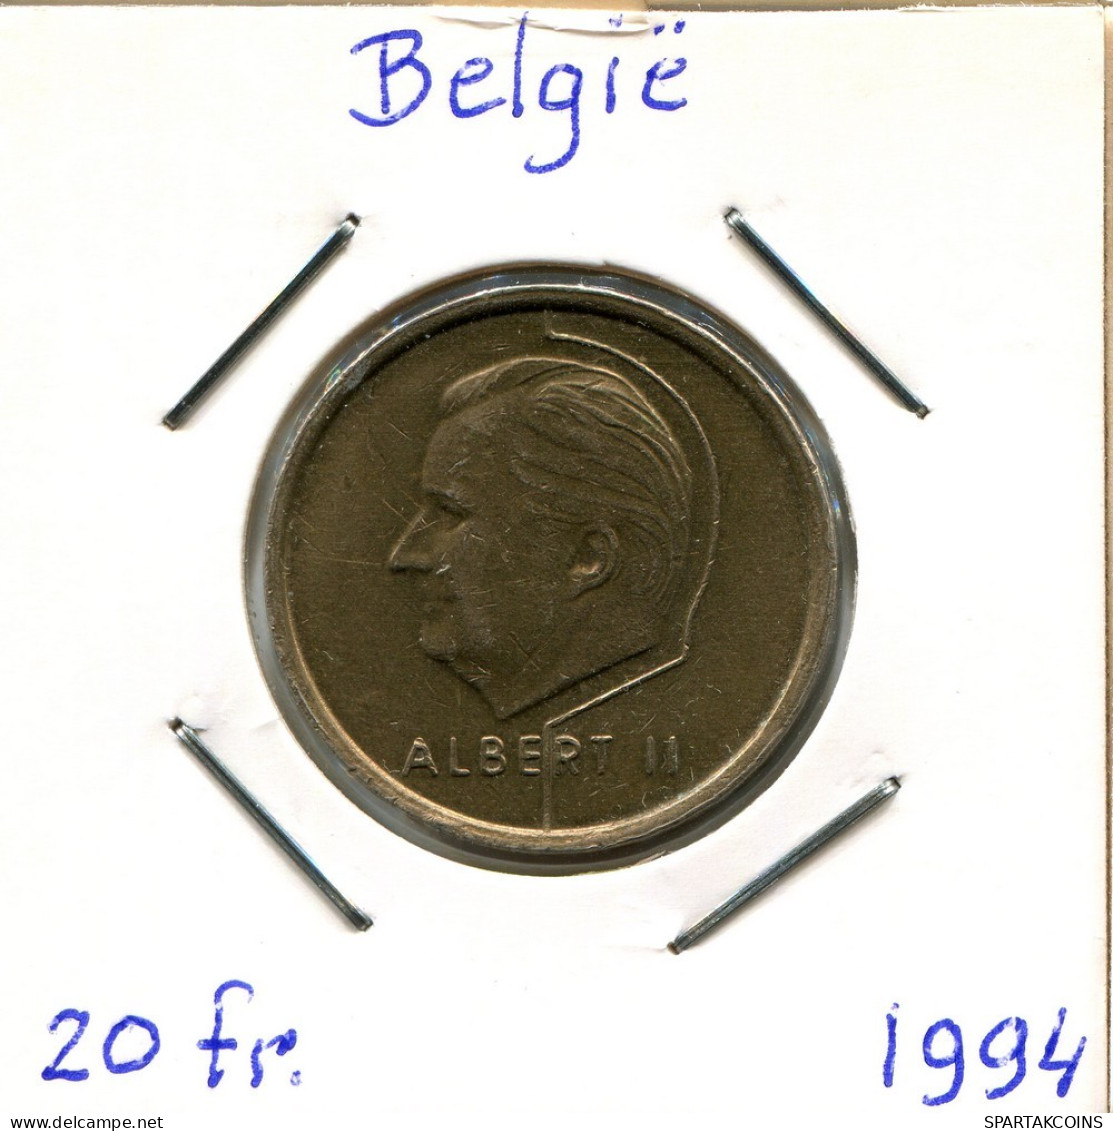 20 FRANCS 1994 DUTCH Text BELGIQUE BELGIUM Pièce #BA671.F.A - 20 Francs